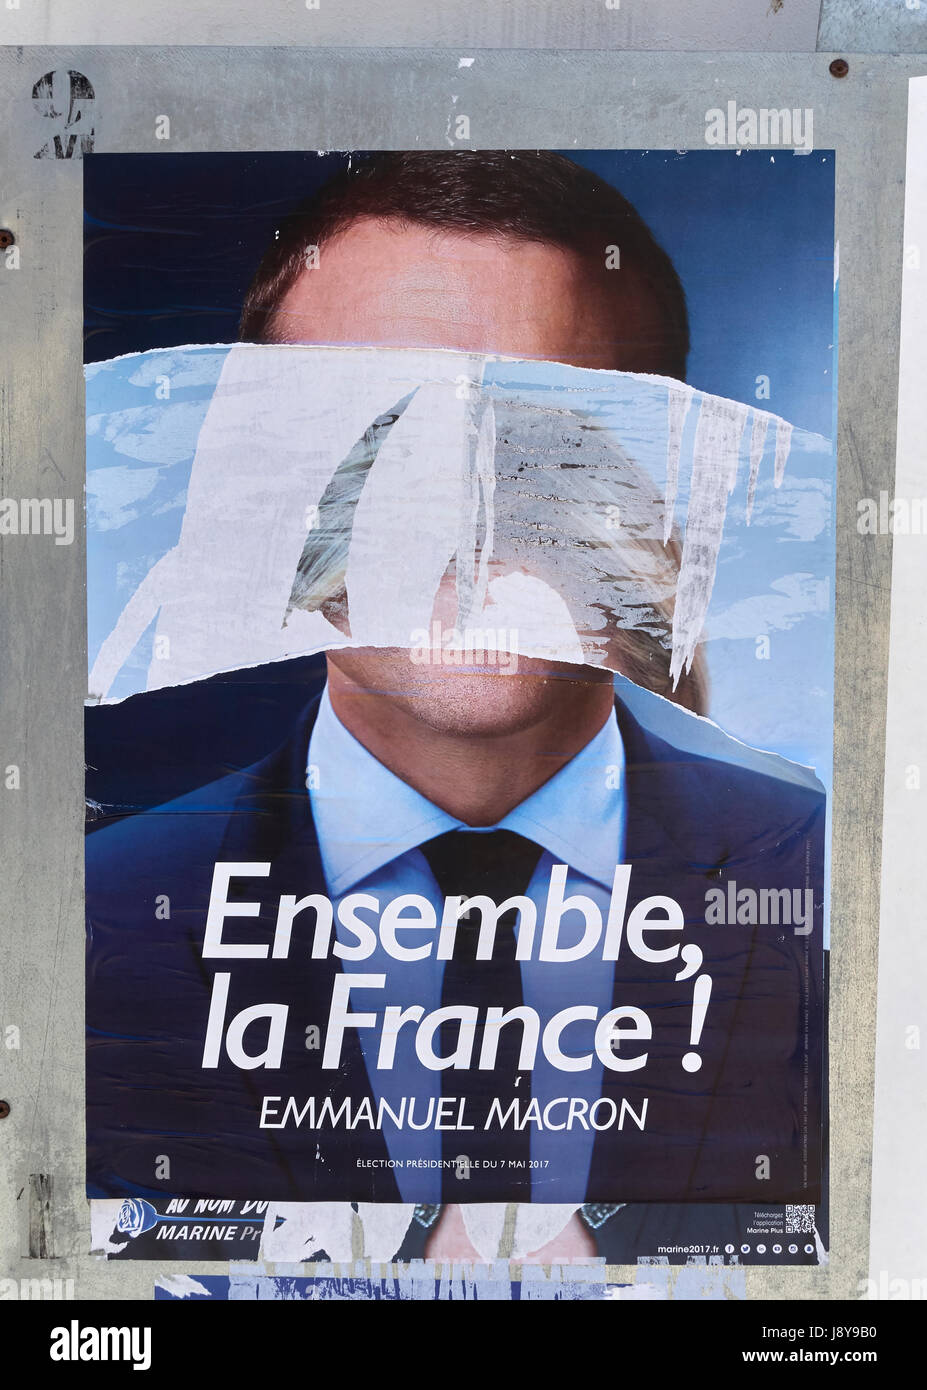 Porträt von Emmanuel Macron in einem Wahlzettel, der während der französischen Präsidentschaftswahl in Frankreich von Vandalen zerstört und entstellt wurde Stockfoto